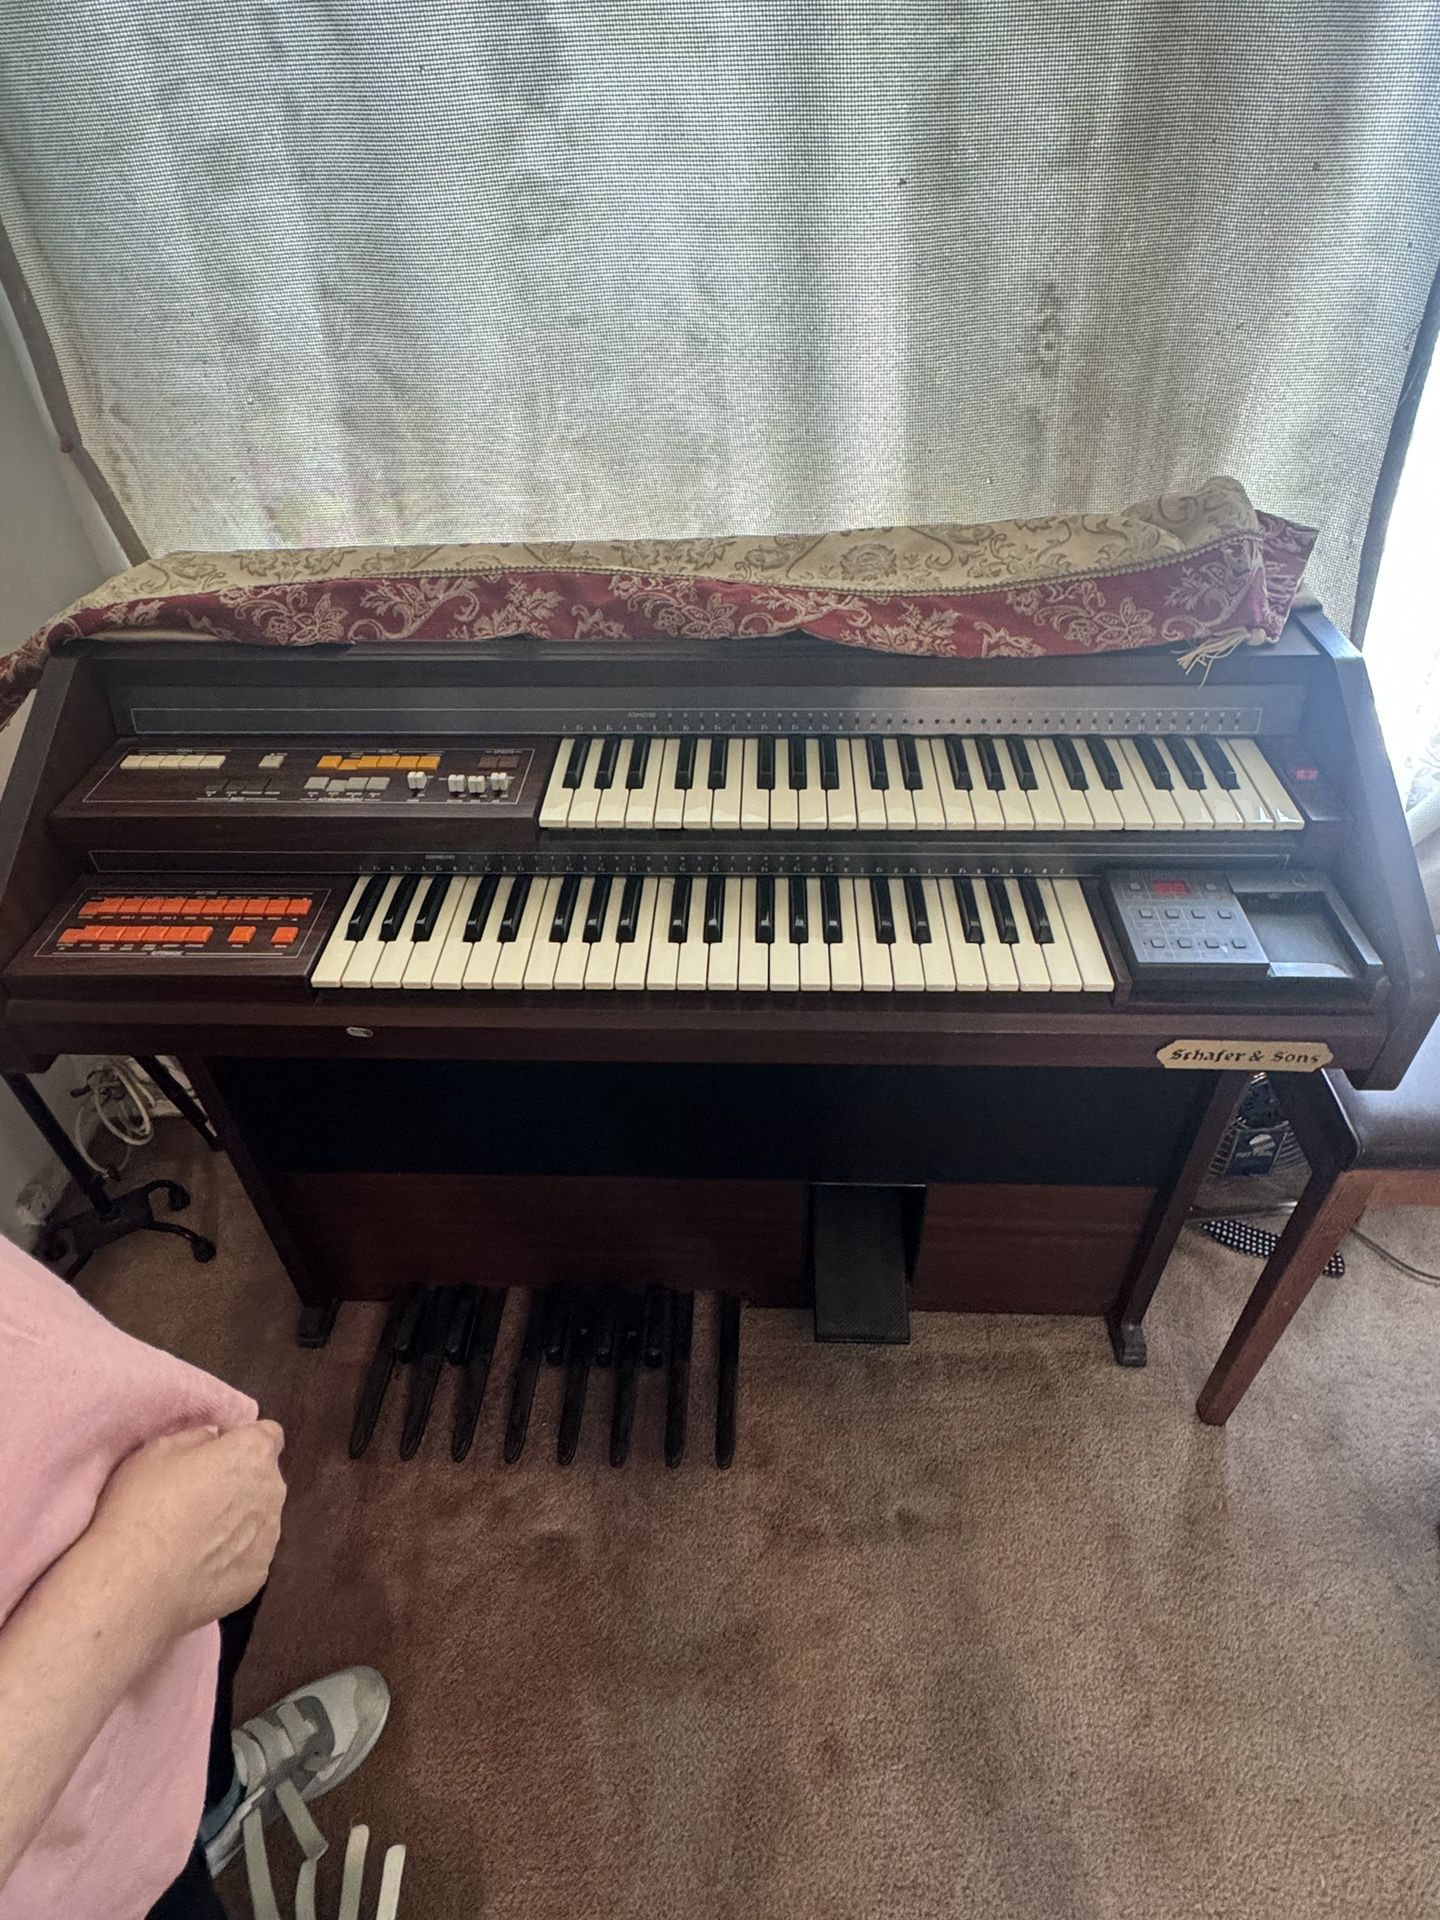 Organ Instrument